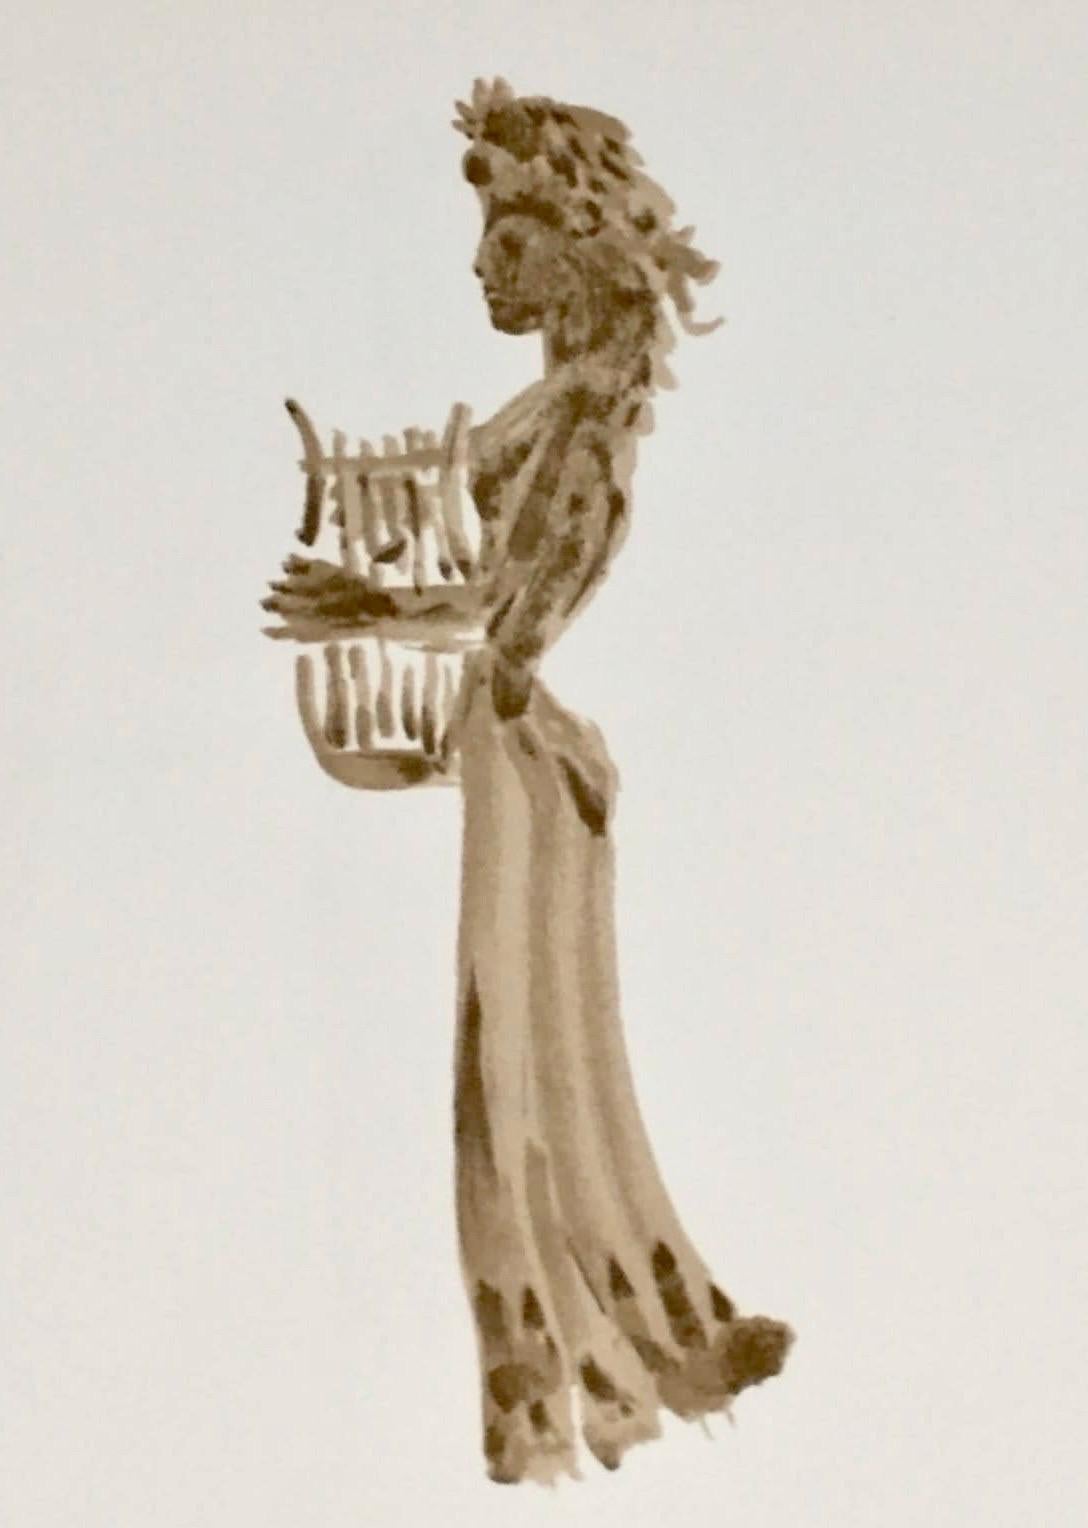 Apeles Fenosa, sculpteur espagnol Mourlot, lithographie - Figures expressionnistes abstraites - Beige Figurative Print par Apelles Fenosa